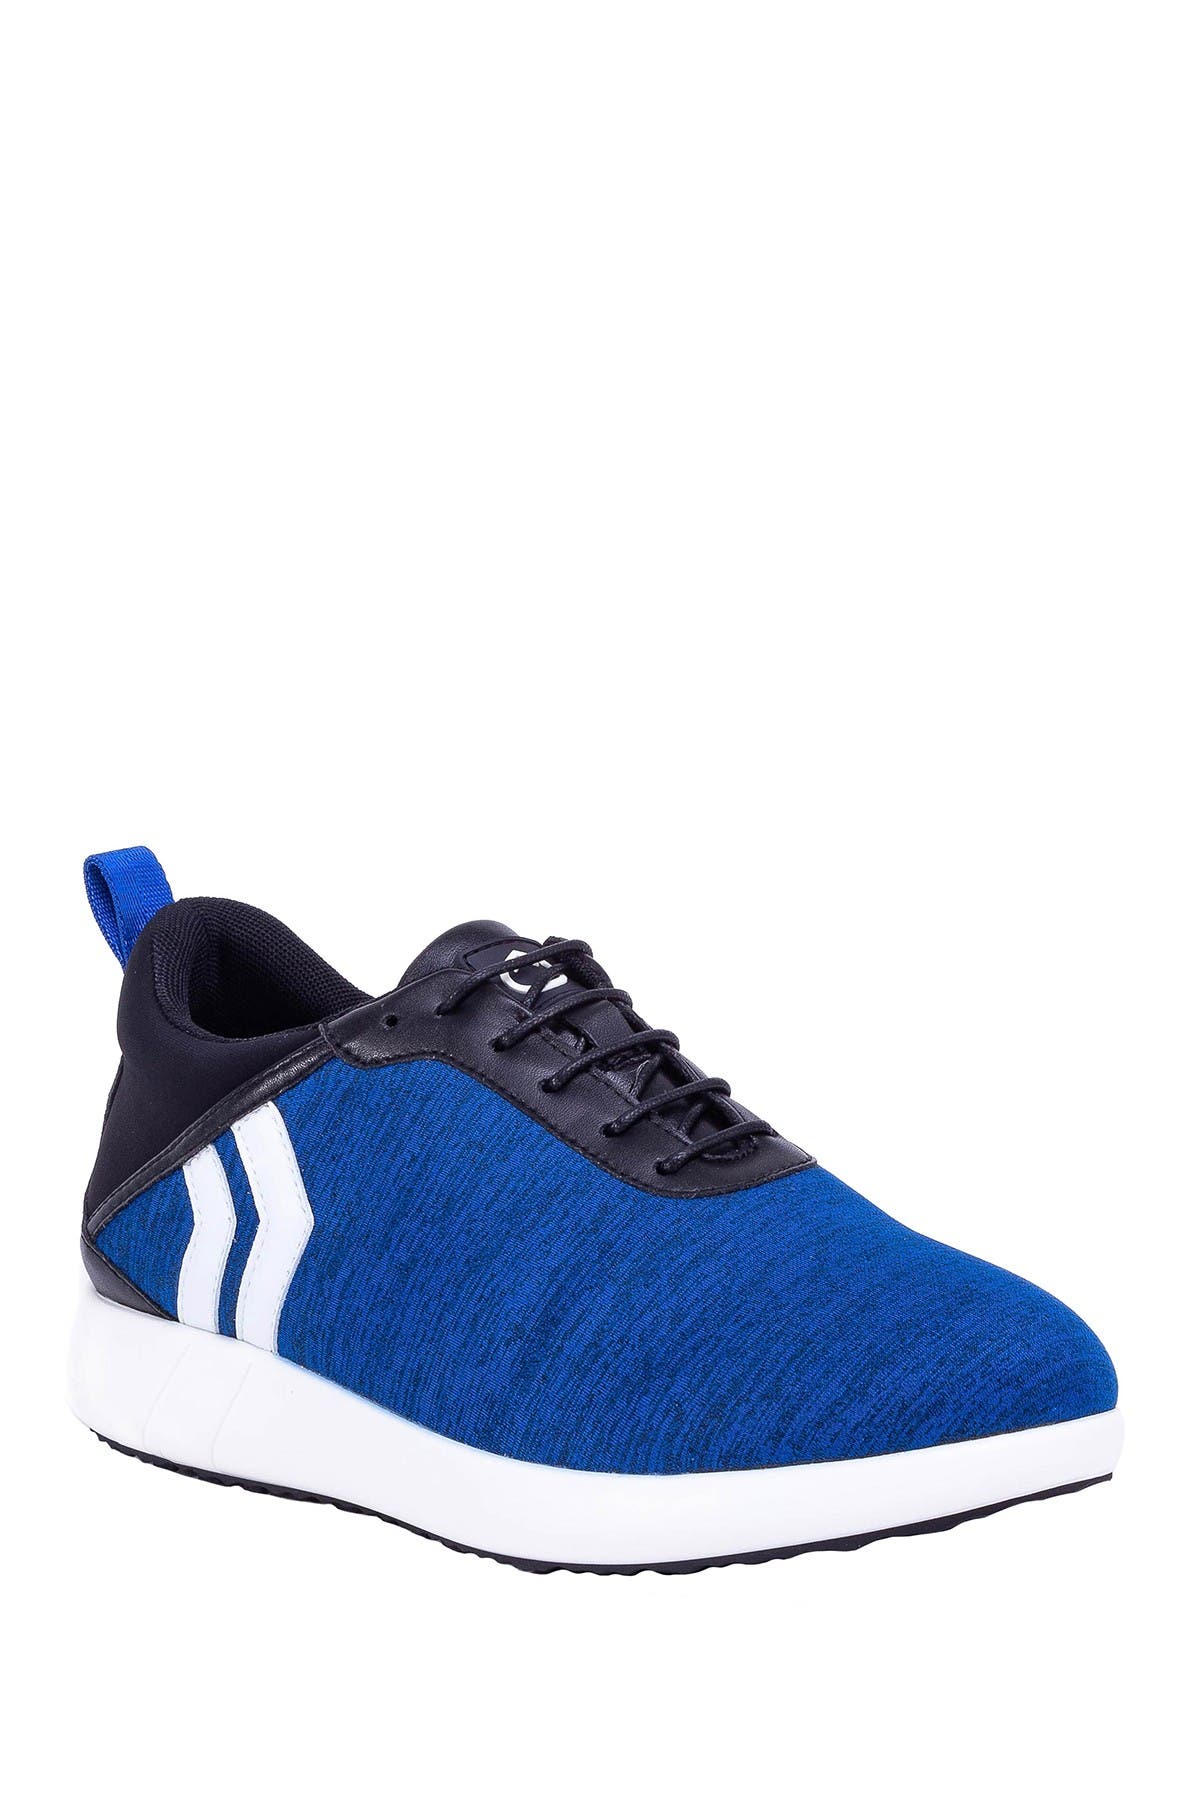 Kicko Avalon Sneaker In Blue